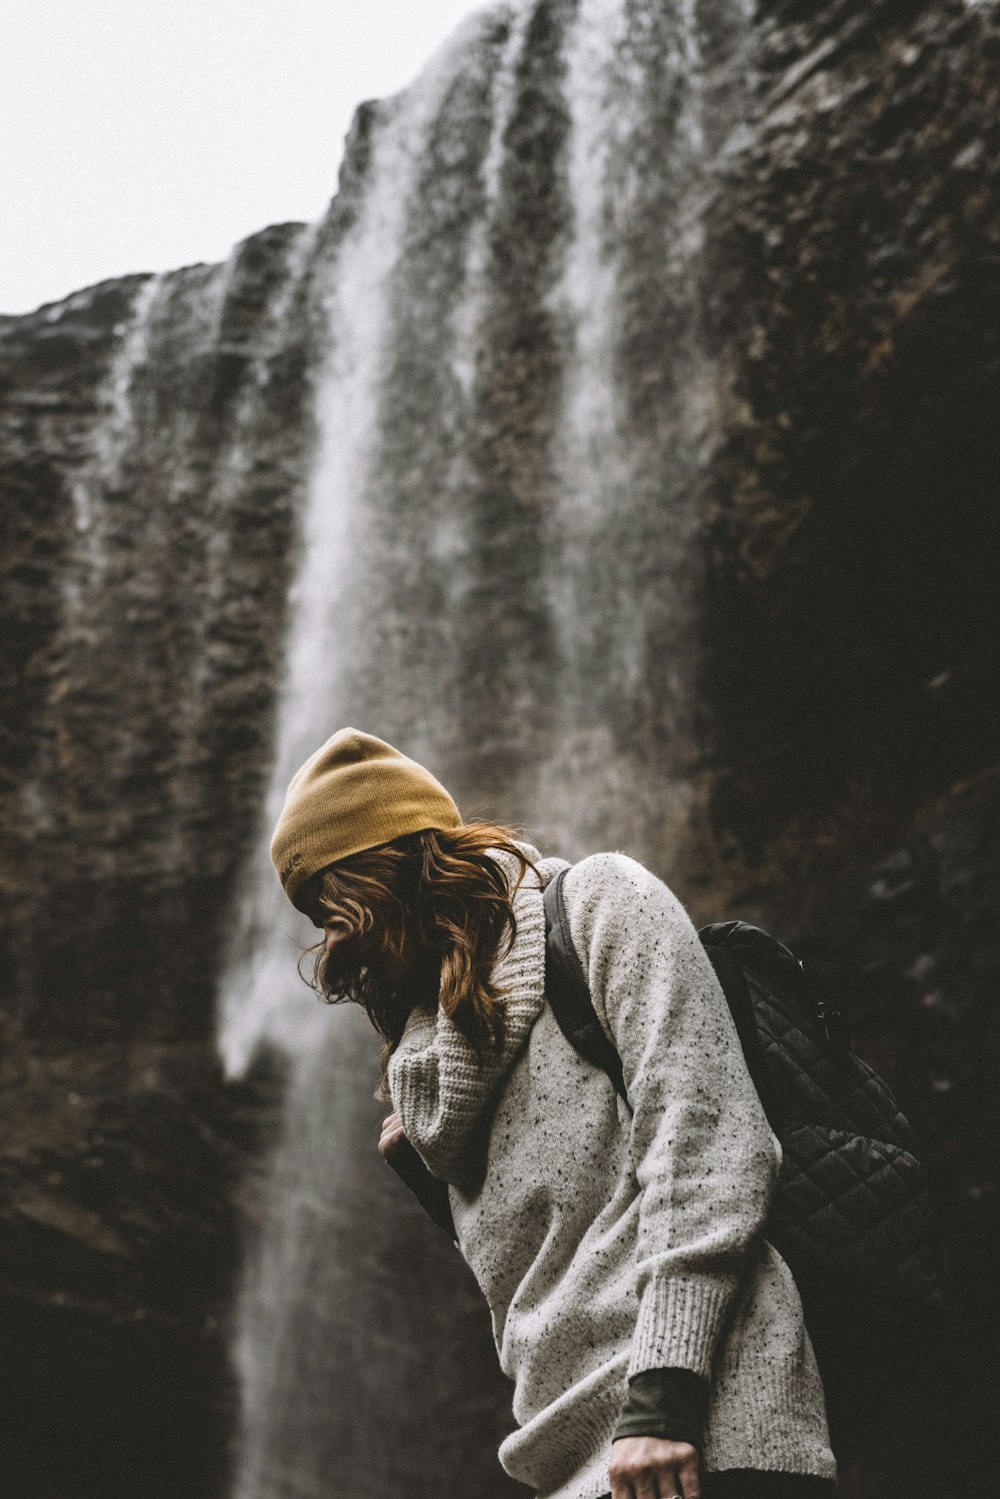 woman in knit cap standing near waterfalls